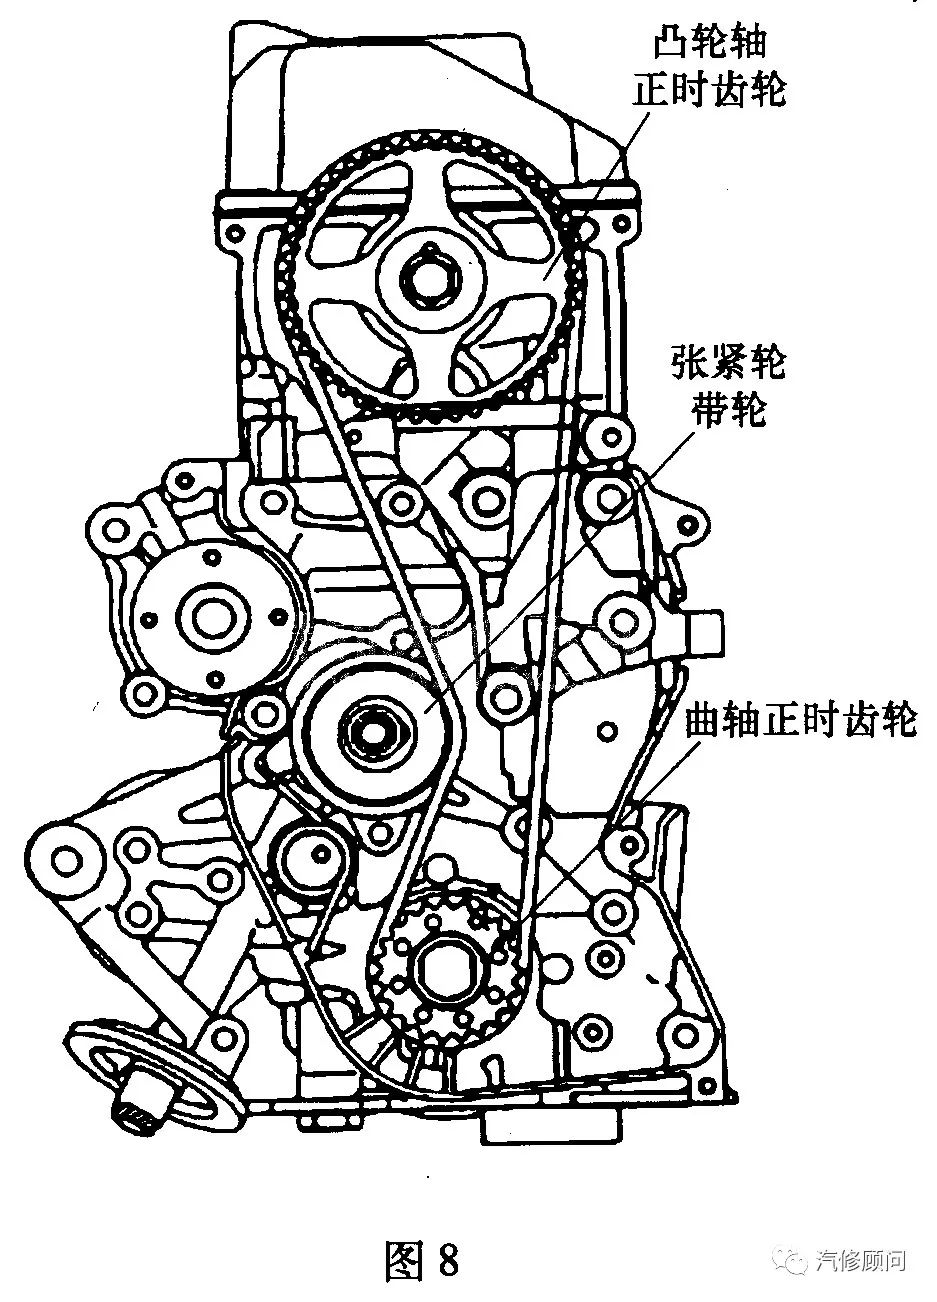 【汽车正时】比亚迪f3(4g18/4g15s)发动机正时传动带拆装方法